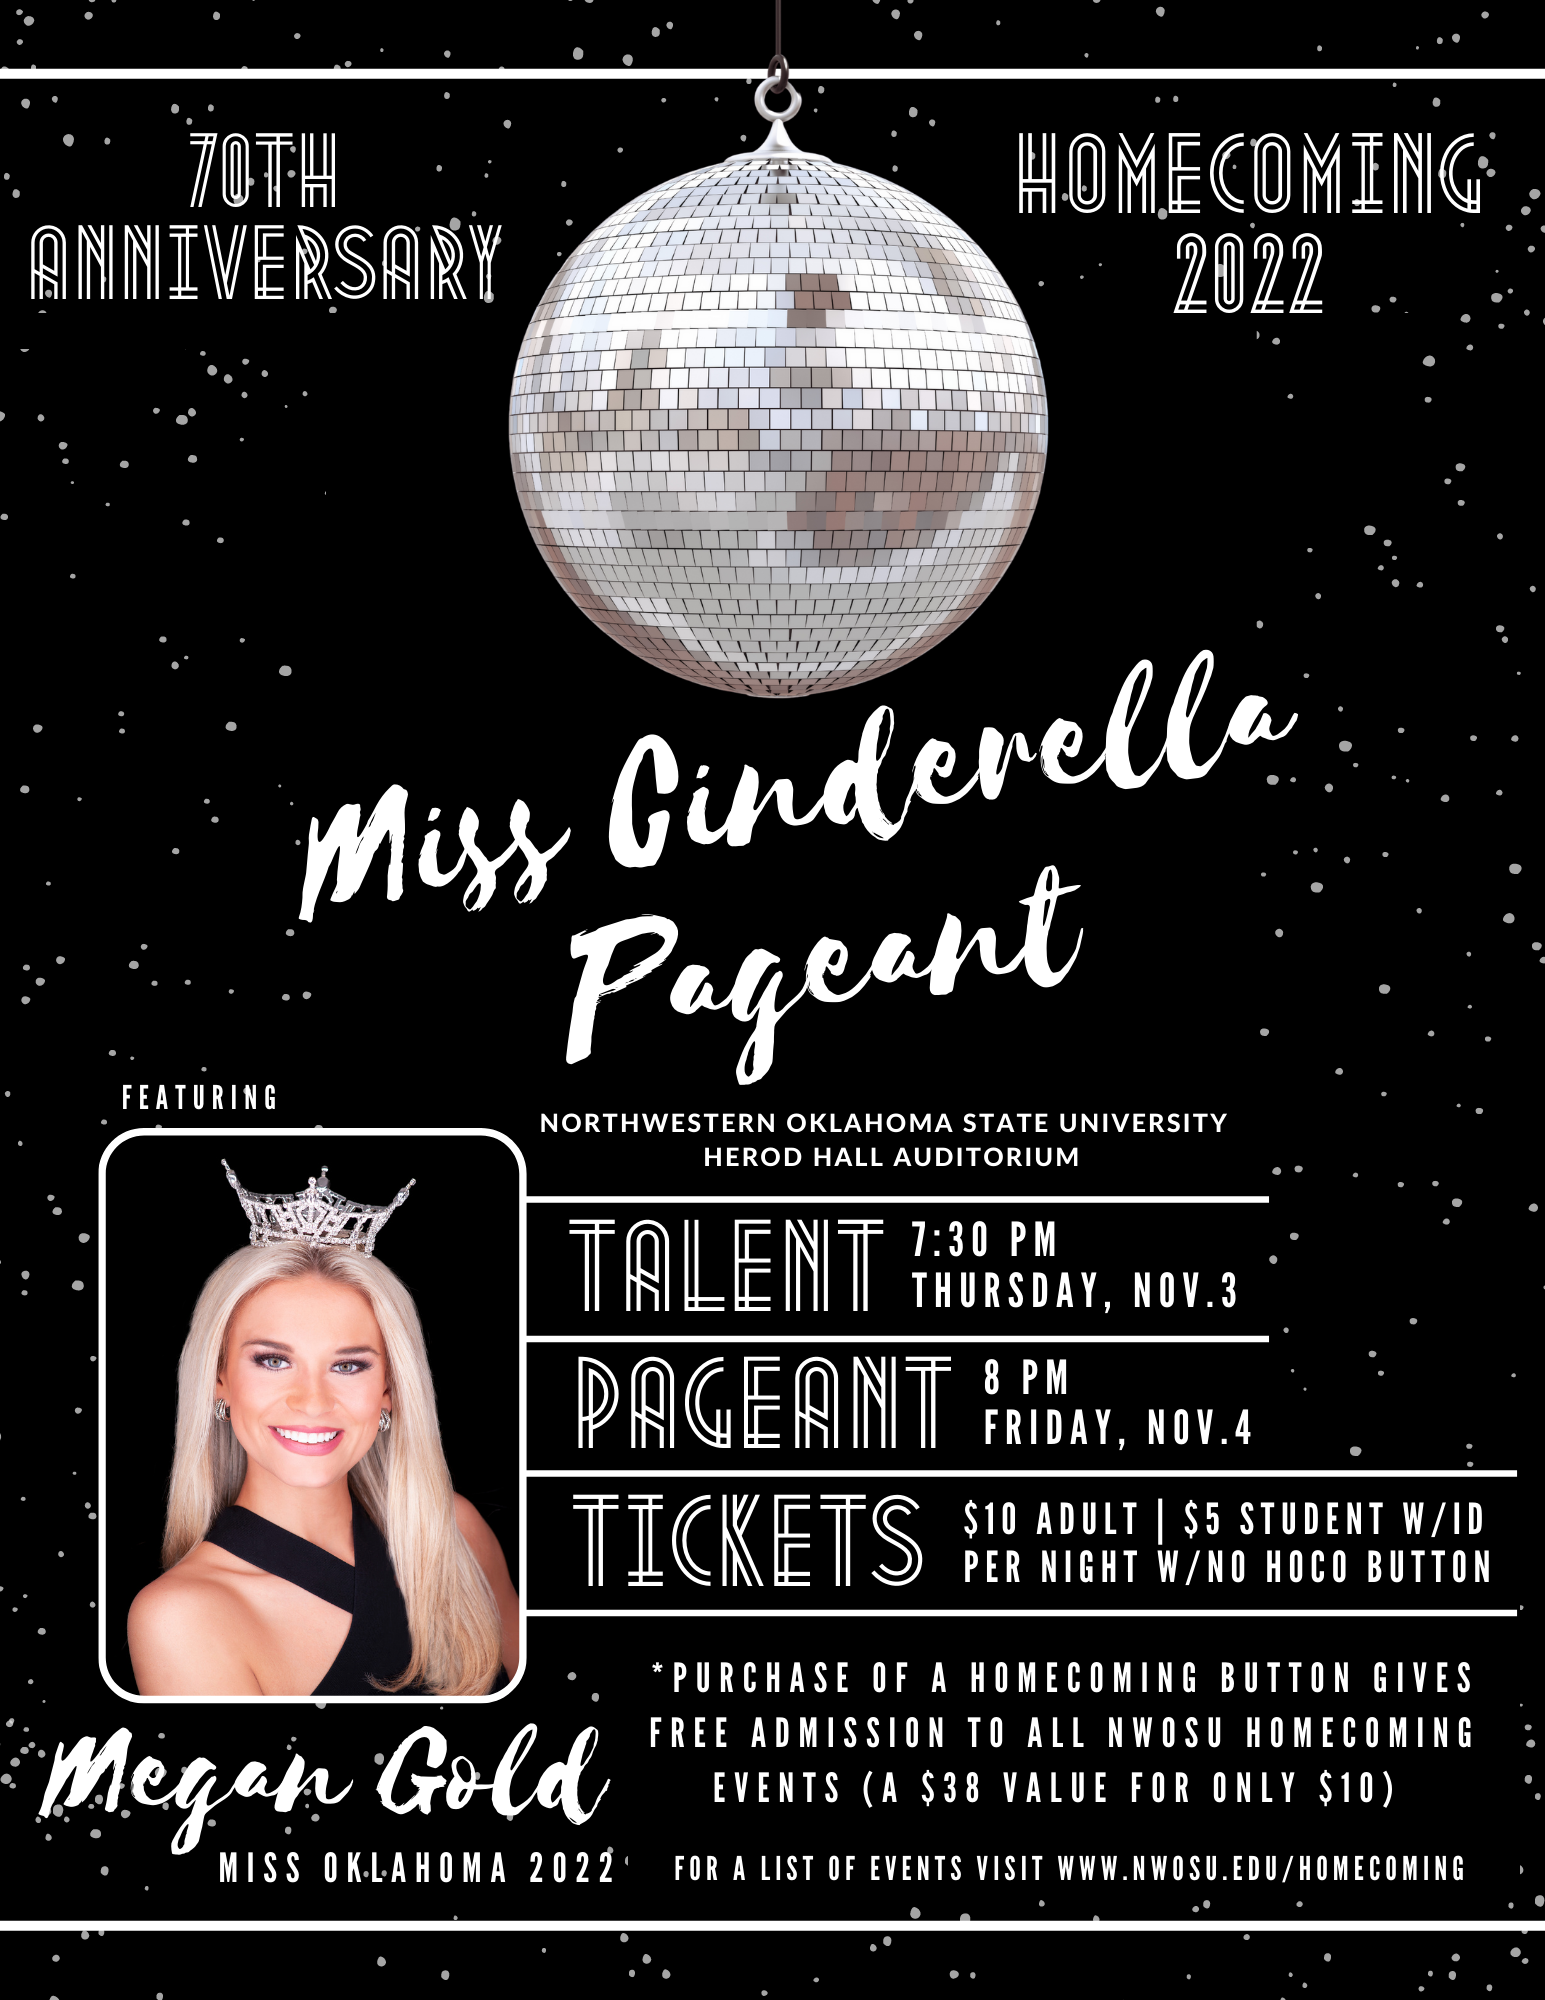 Miss Cinderella Poster 2022